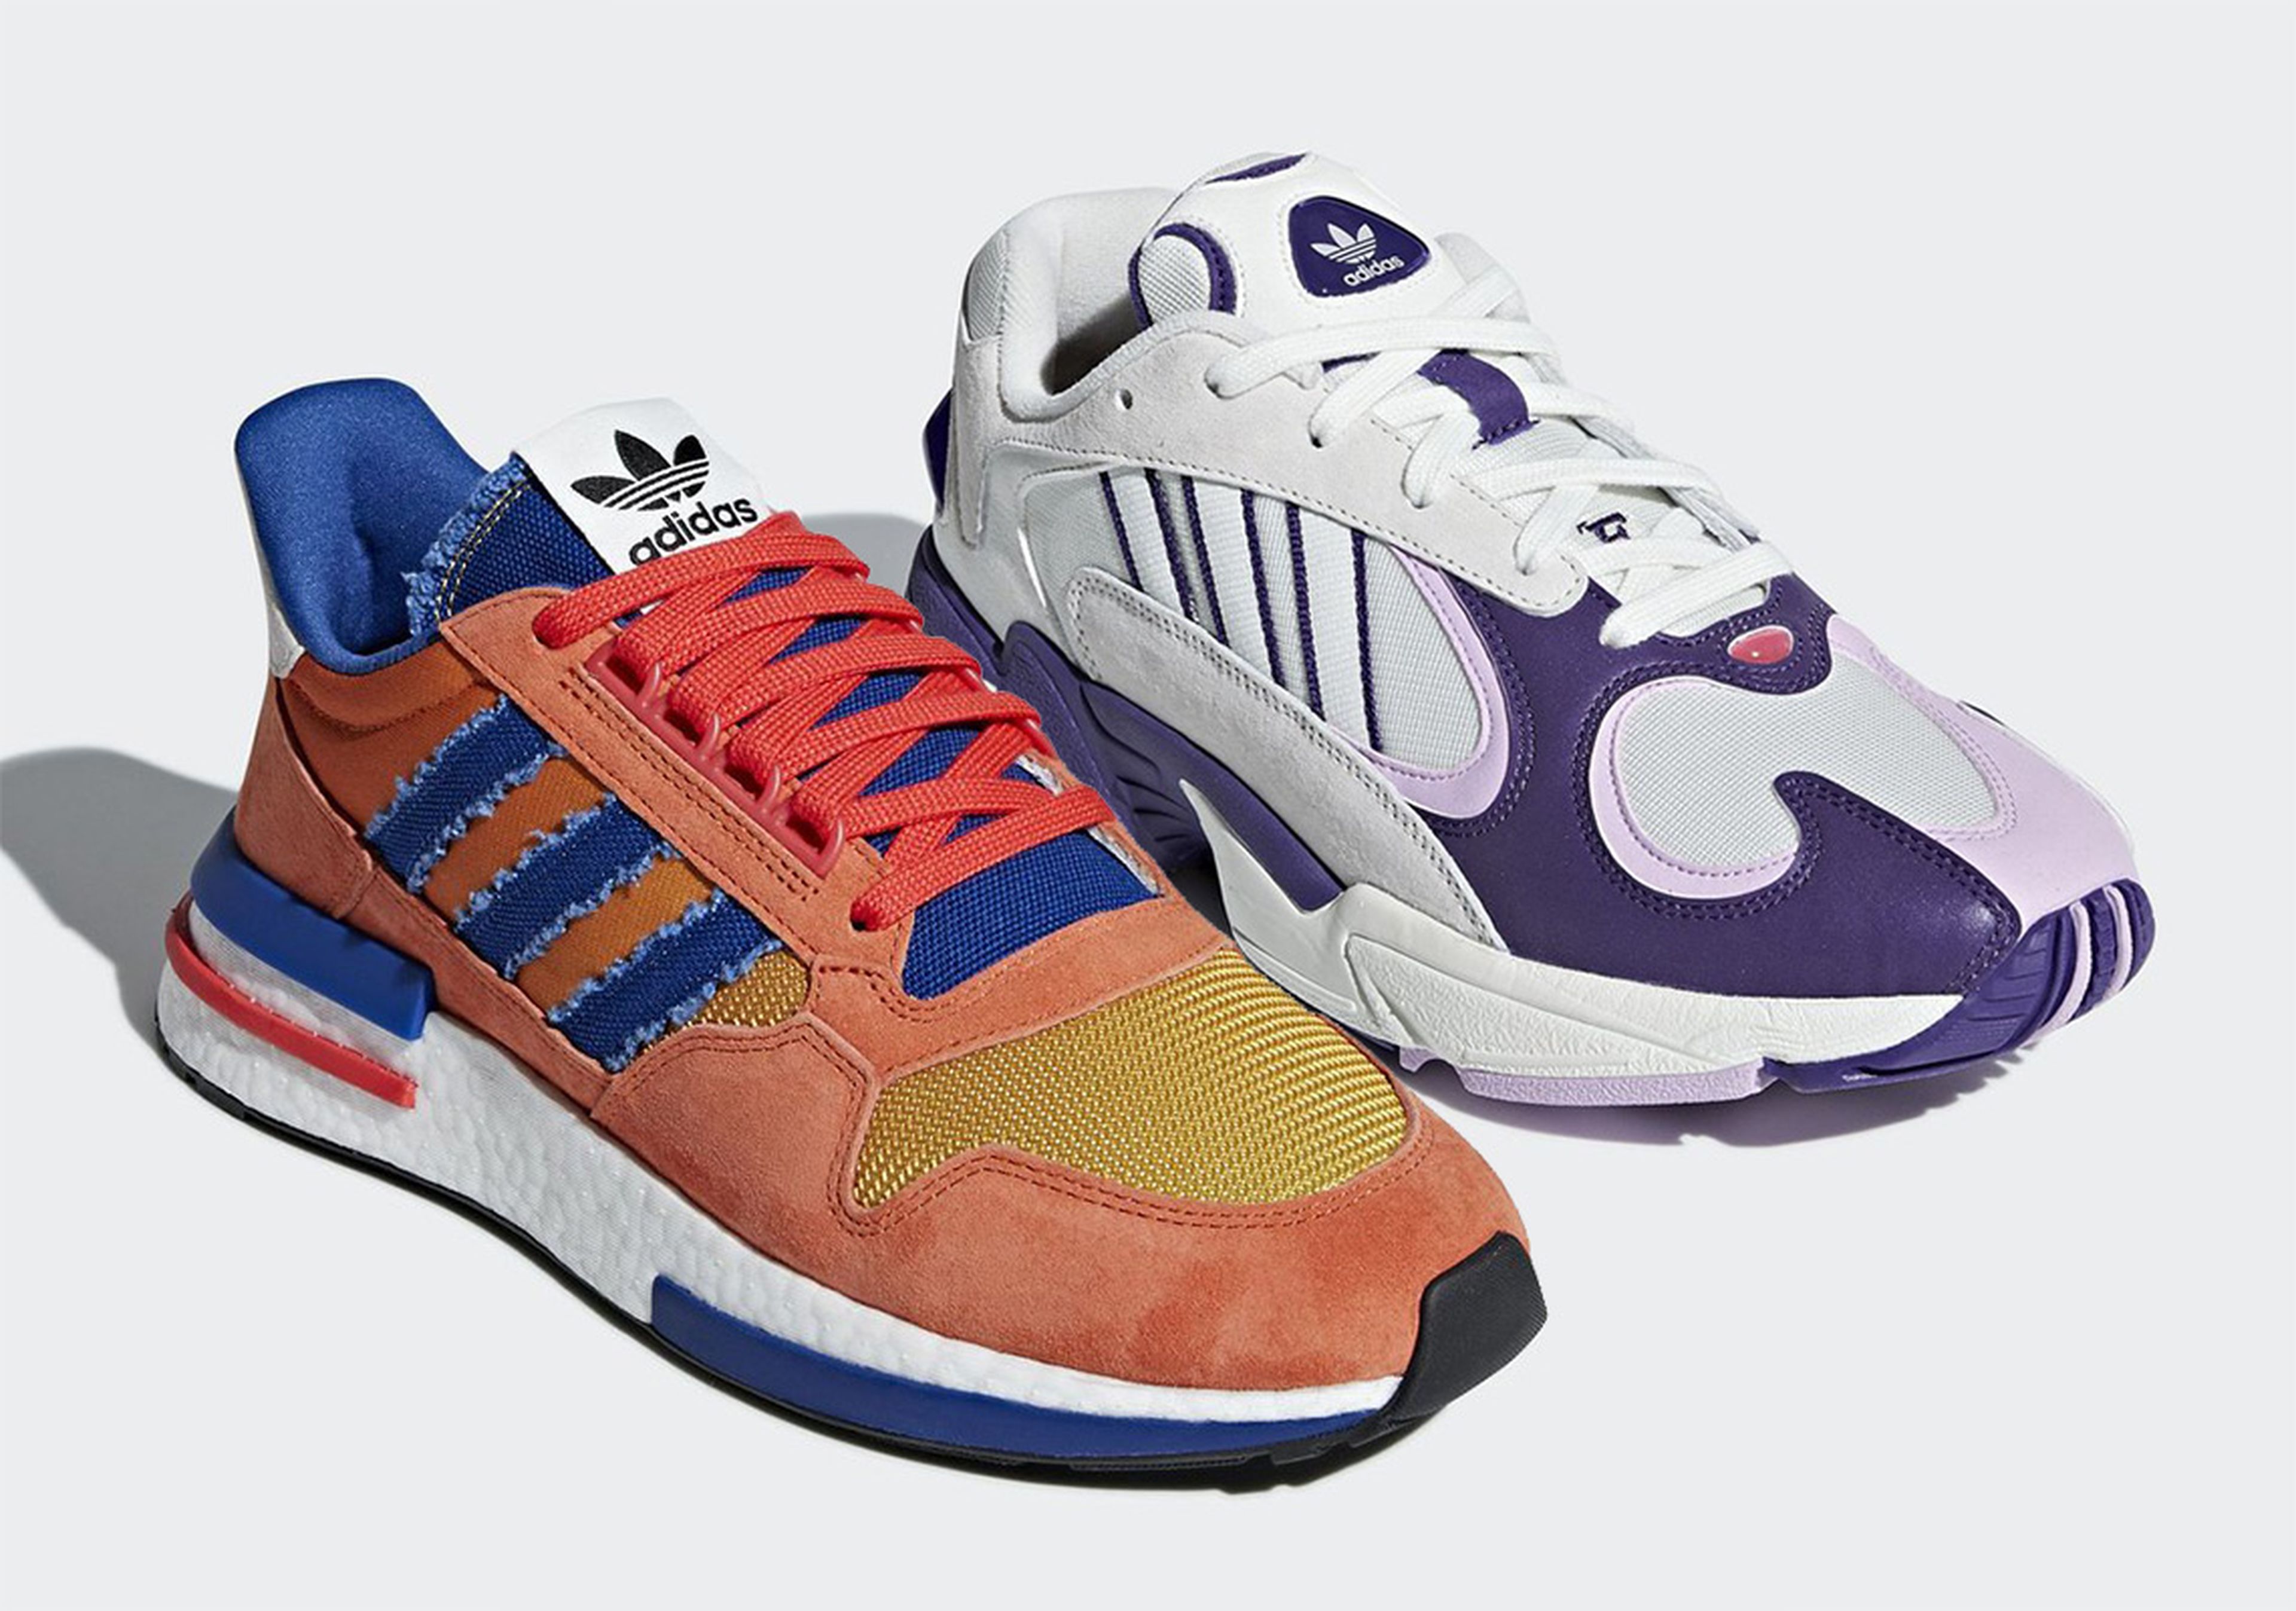 Zapatillas Adidas inspiradas en Dragon Ball: Goku y Frieza